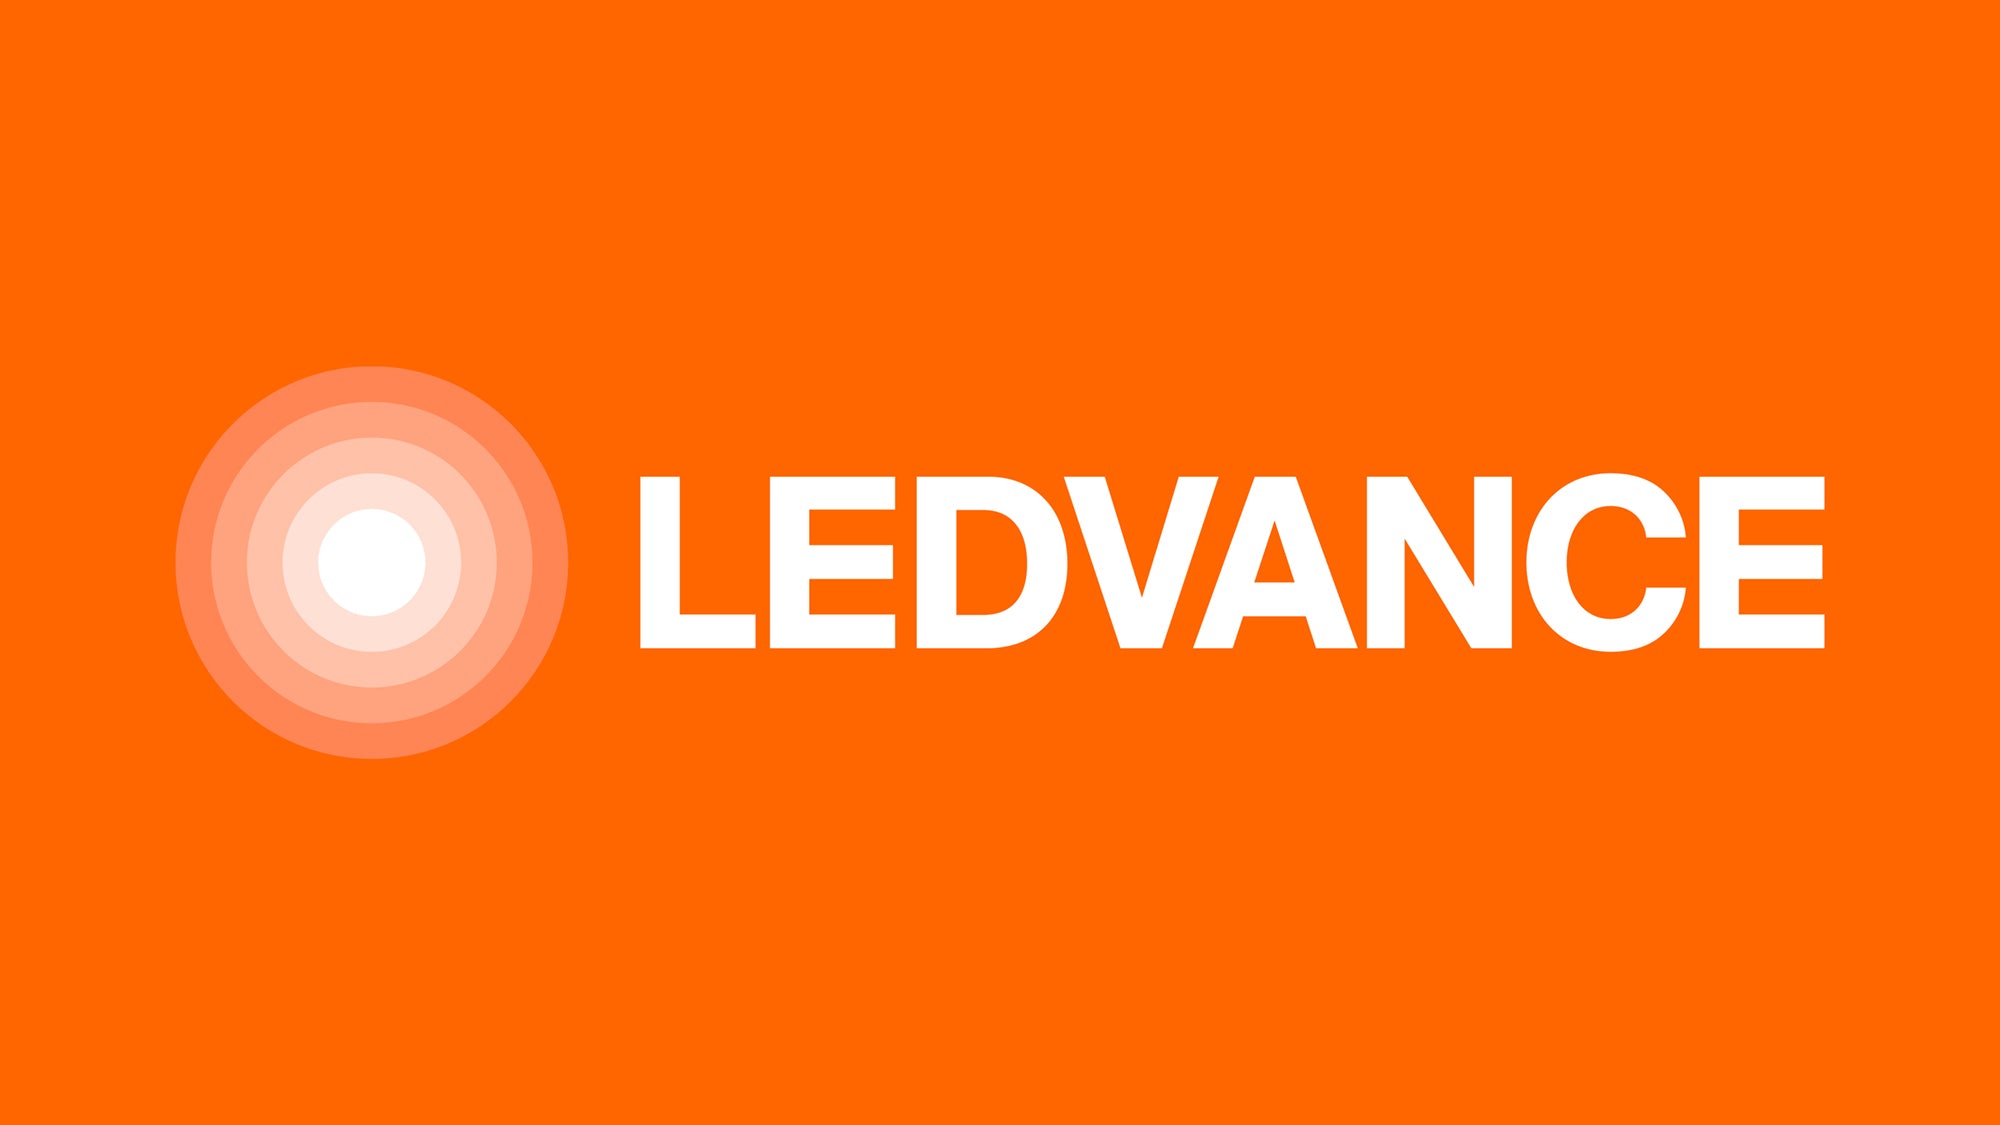 Ledvance LEDVANCE